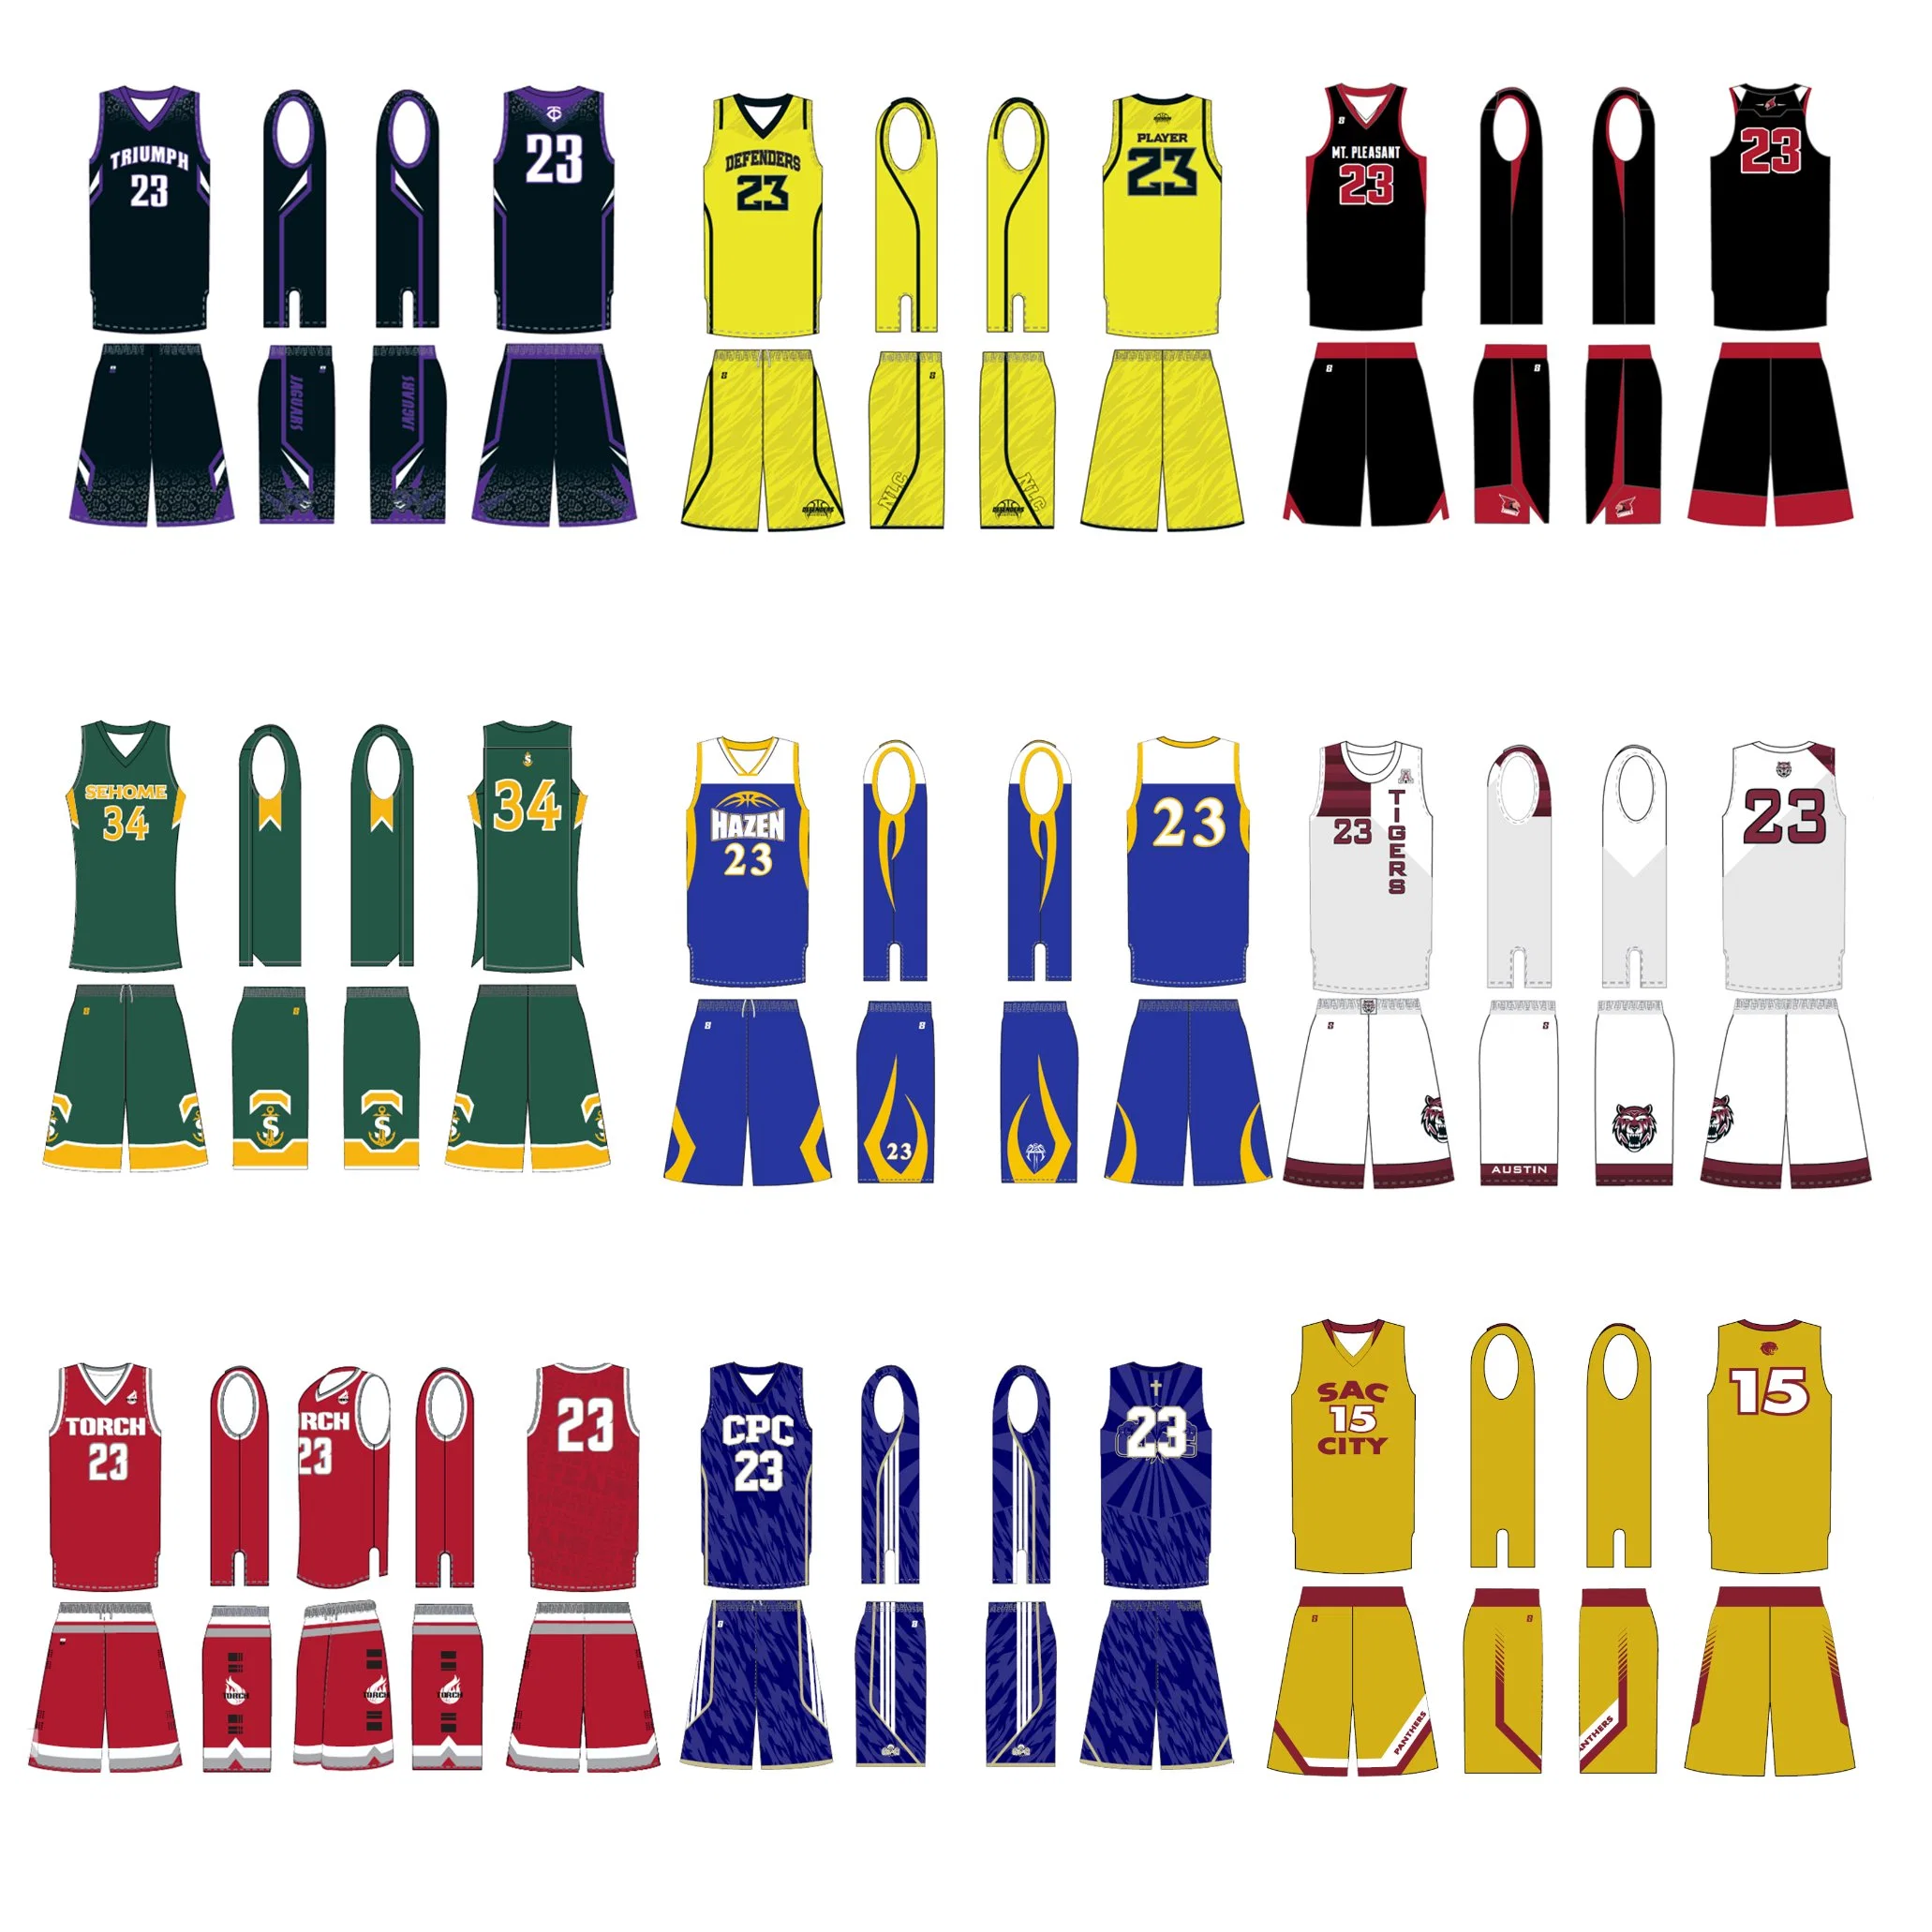 Última sublimação do basquetebol reversível Jersey Design Personalizado de uniformes de basquete se sublima sportswear